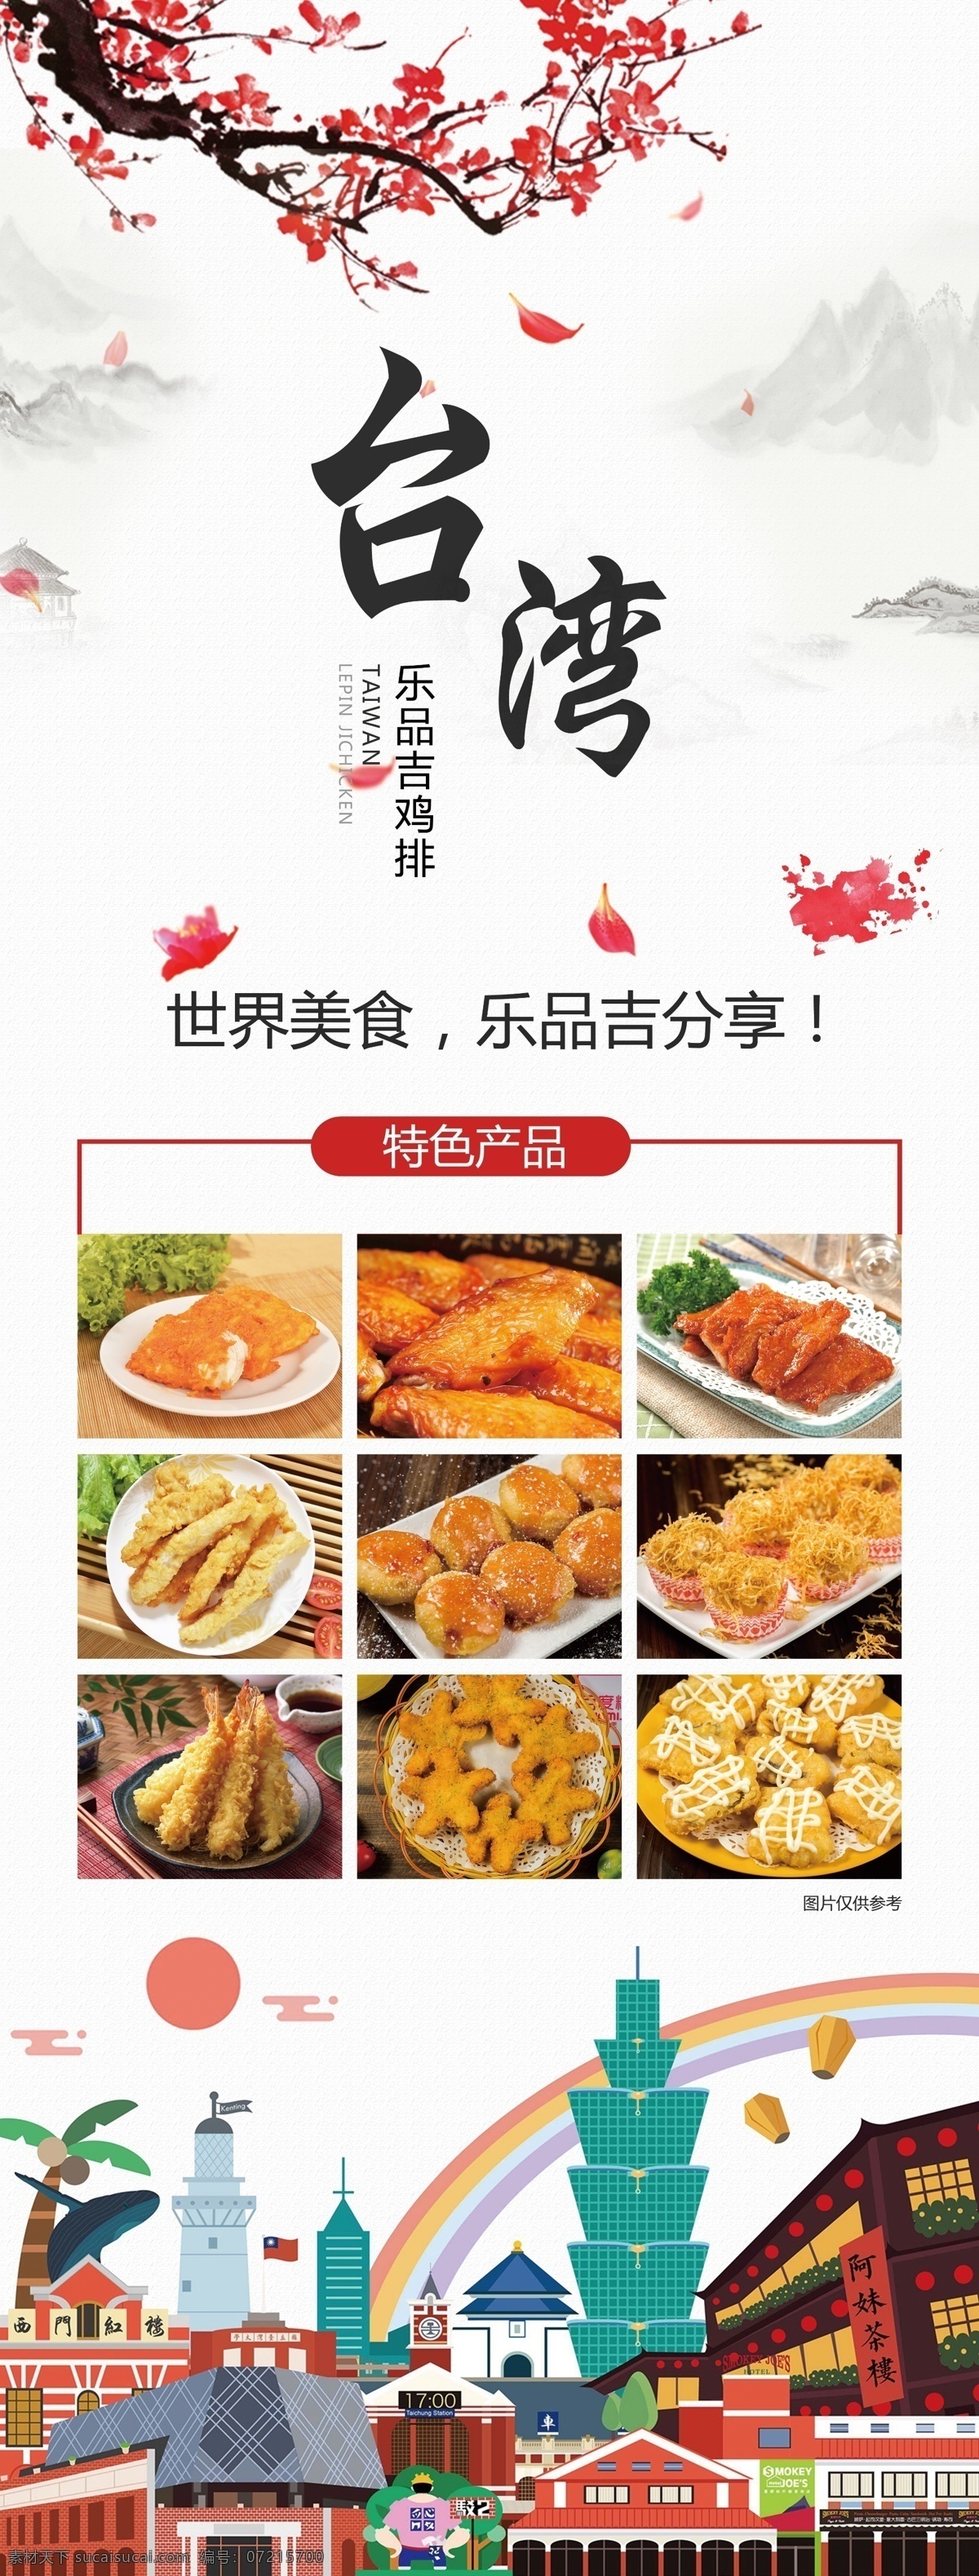 台湾 特色 美食 展架 美食展架 乐品 吉 鸡 排 餐饮行业